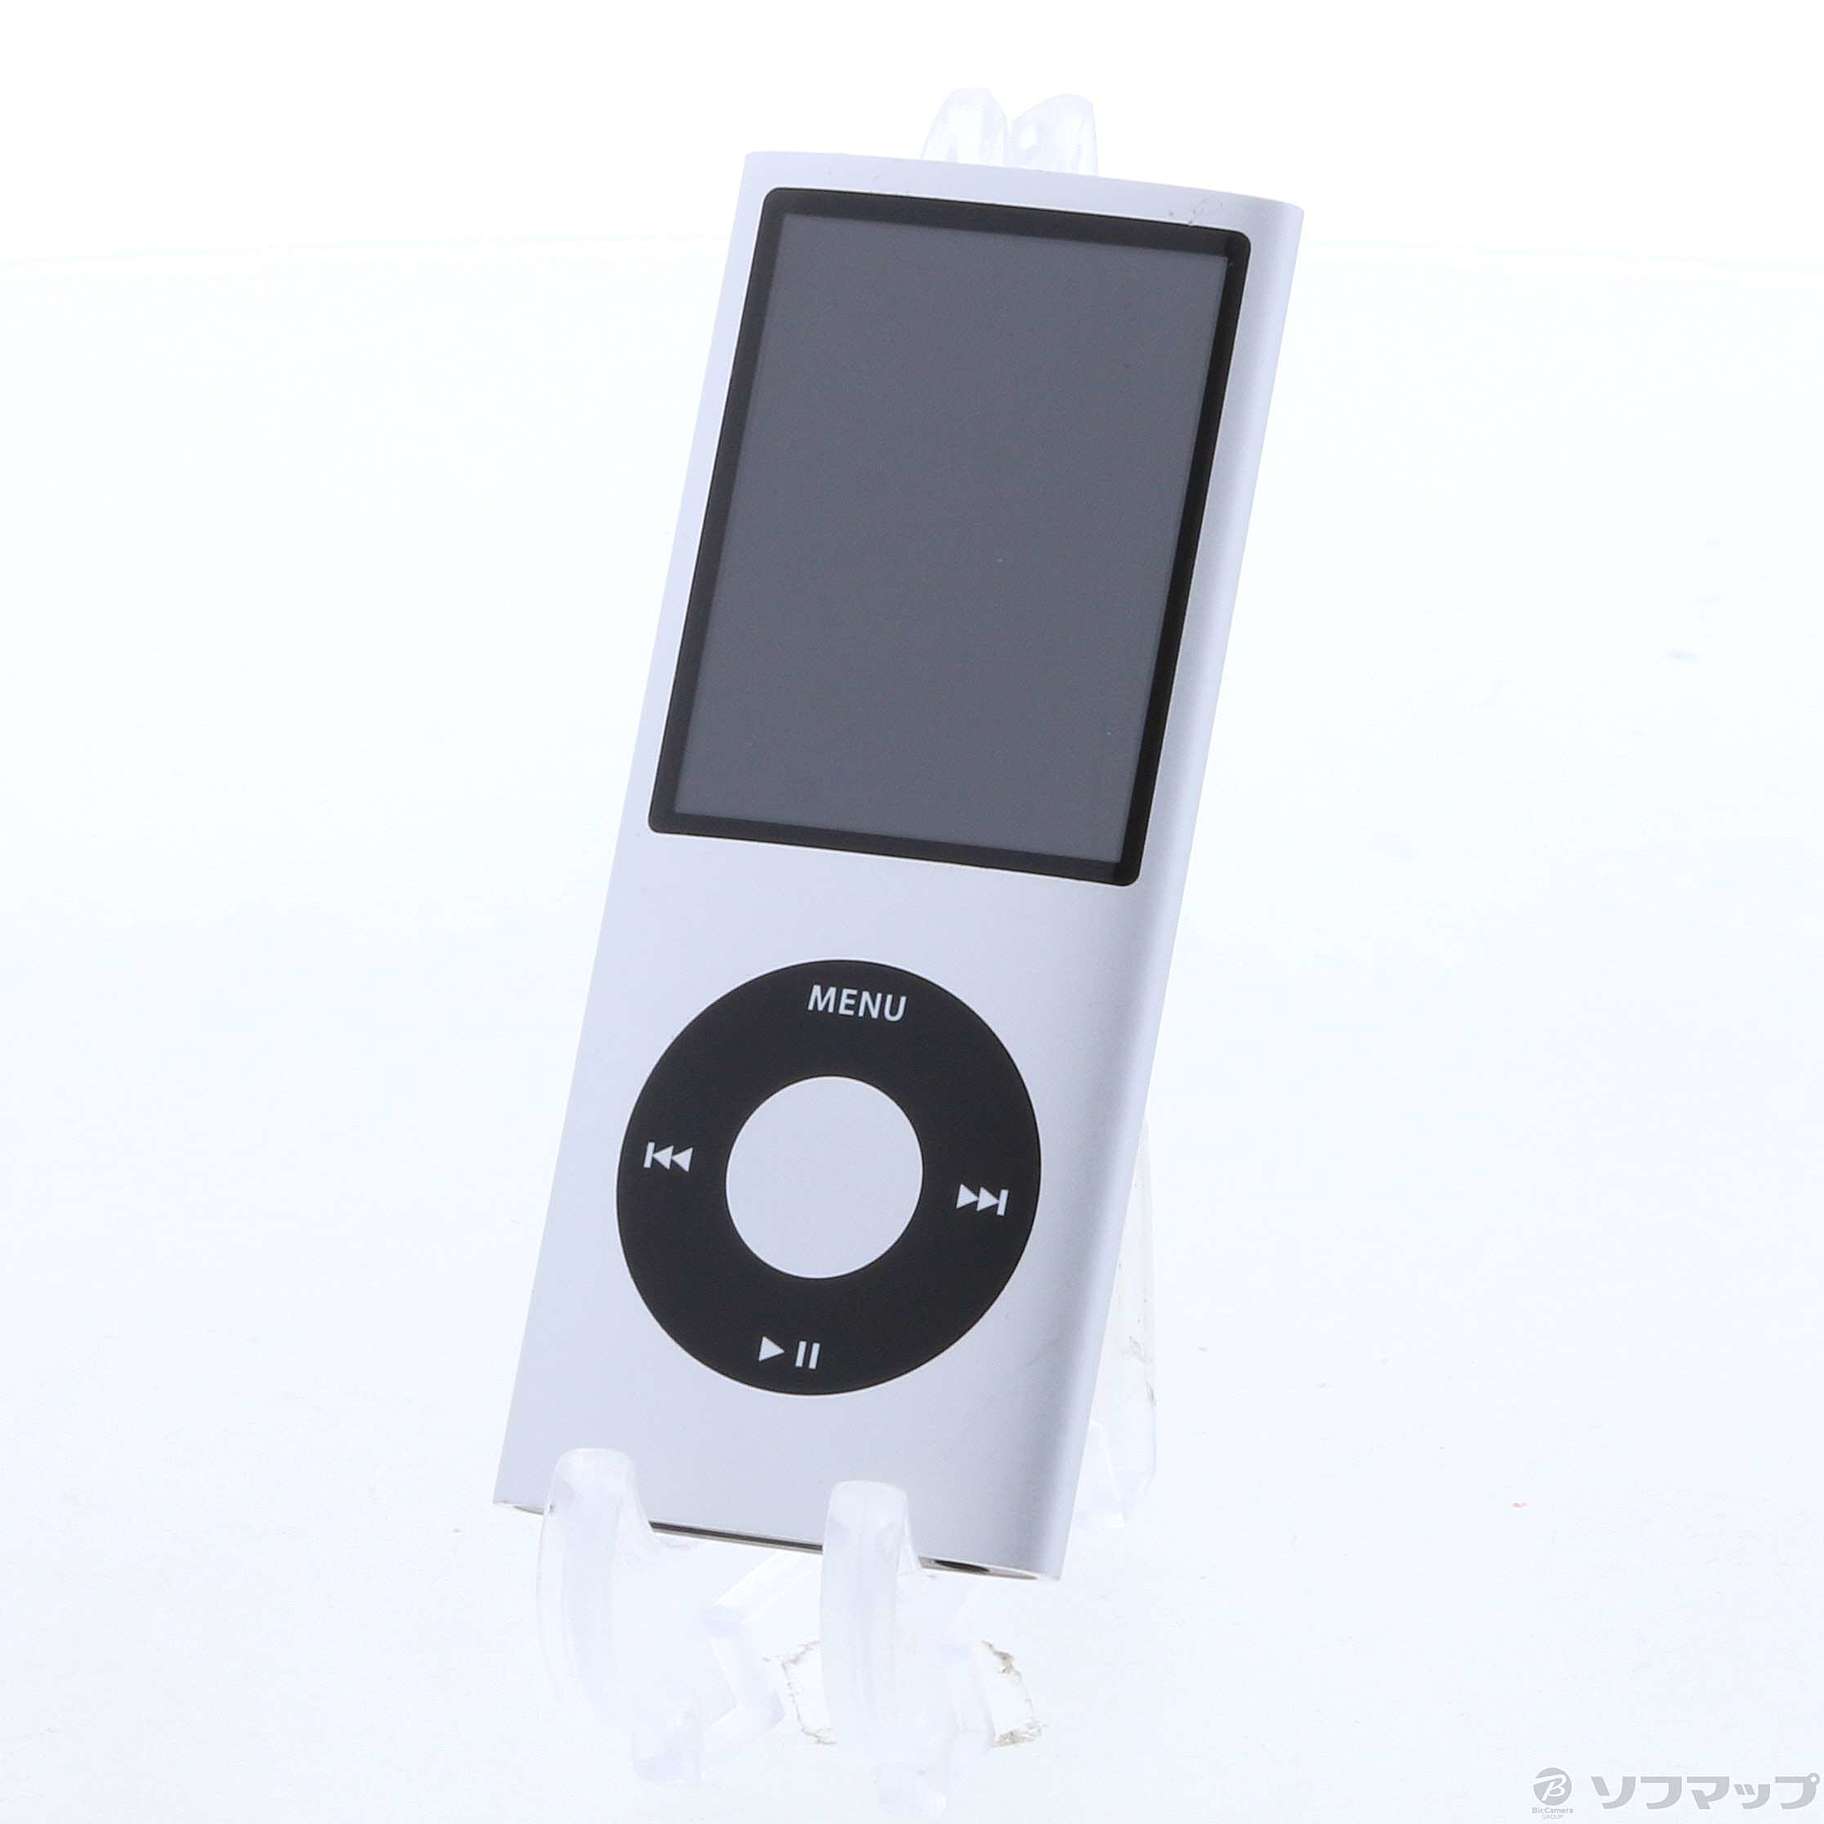 自宅にて保管しておりました未開封  iPod nano 16GB silver MD480J/A